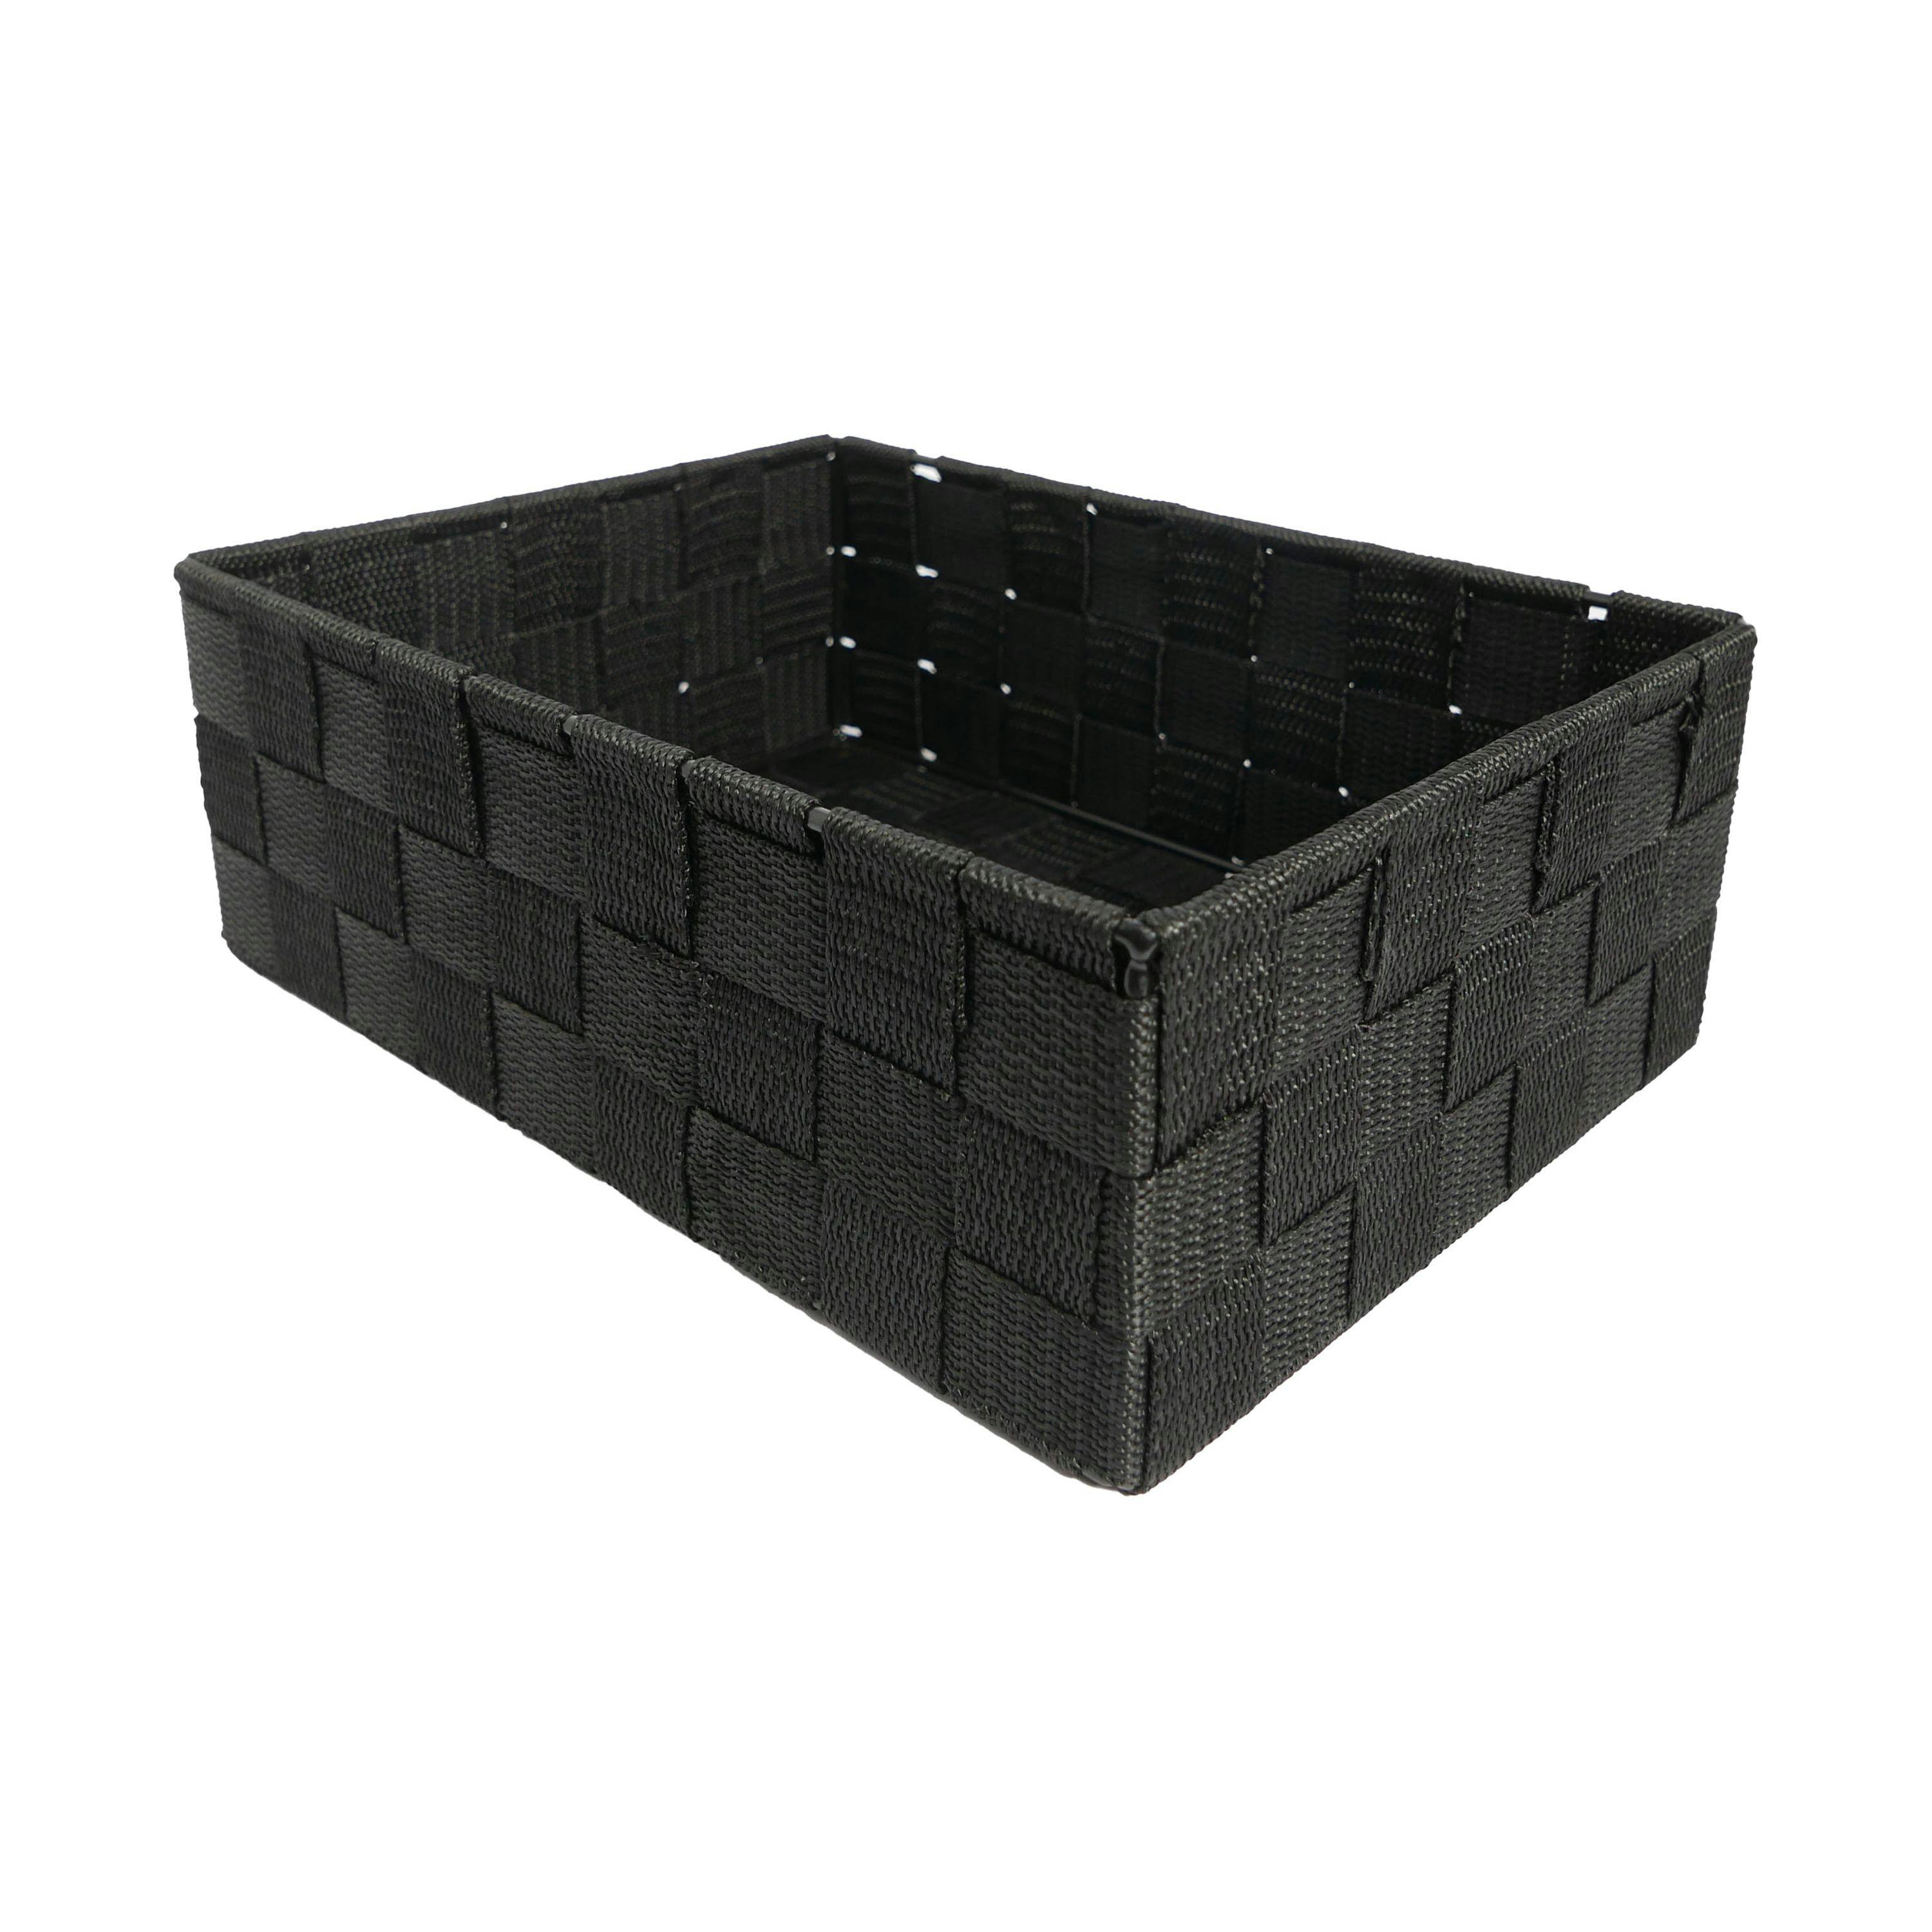 Regalkorb 9 x 24 x 24 cm Aufbewahrungskorb Korb quadratisch geflecht  schwarz | METRO Marktplatz